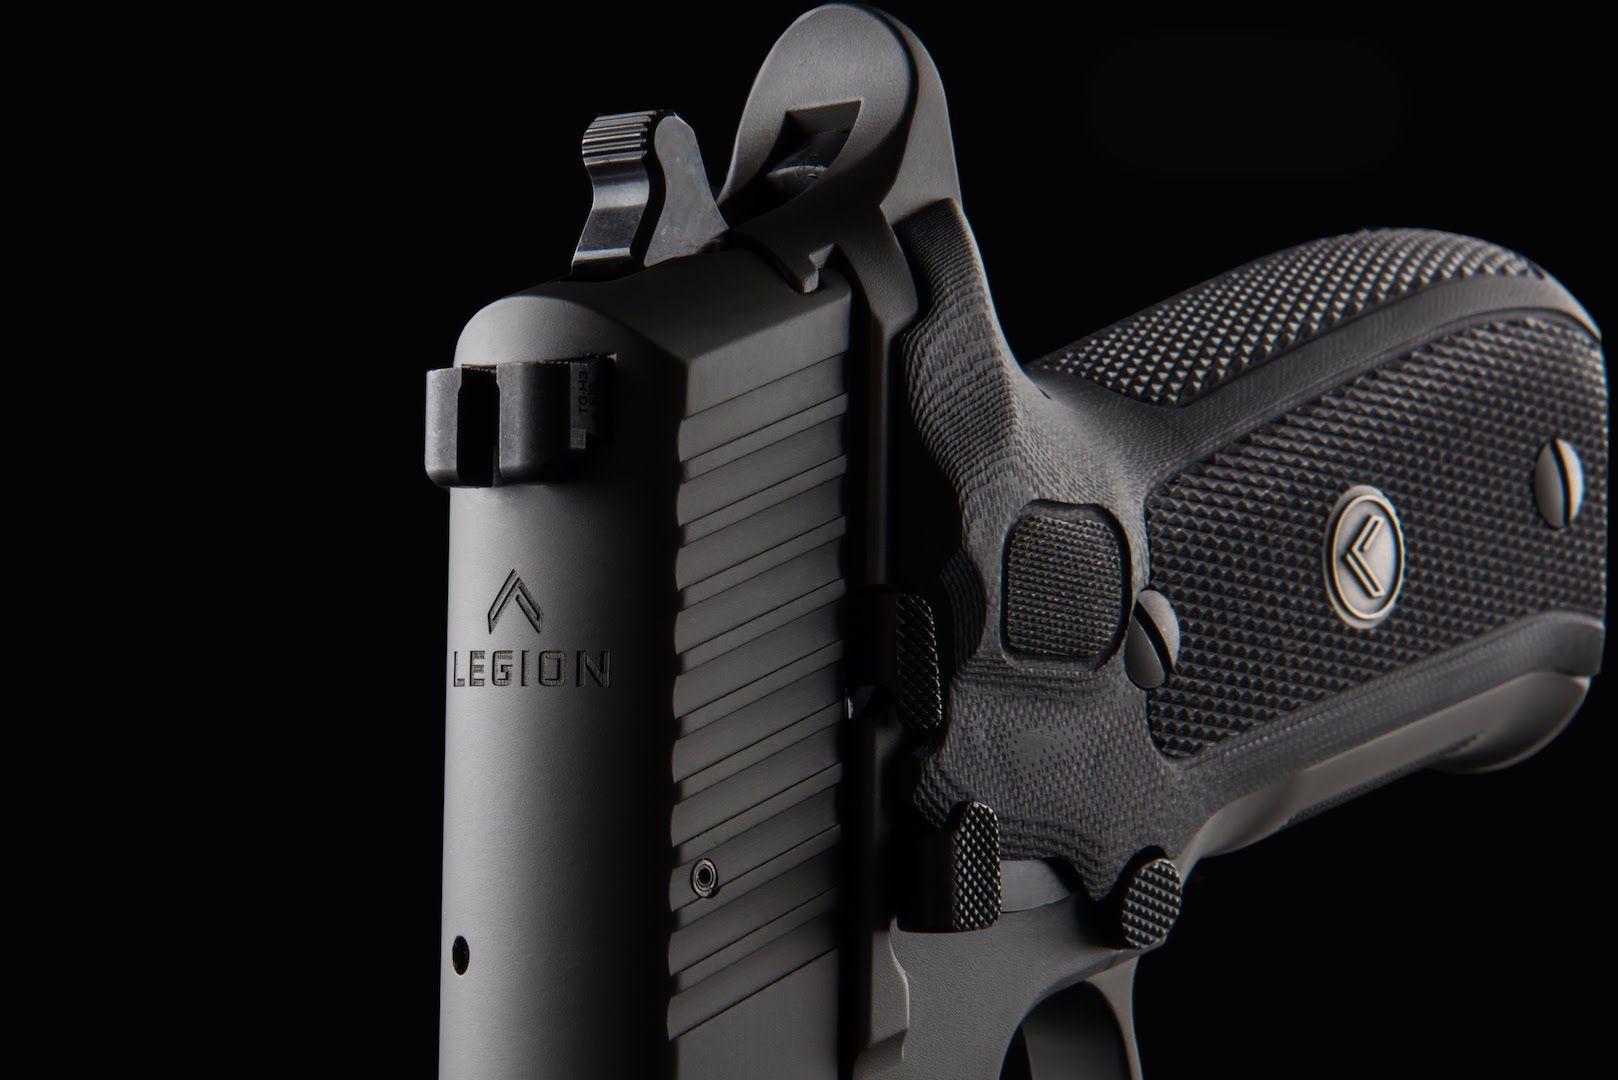 Sig Sauer Legion P226 Pistol Features Review